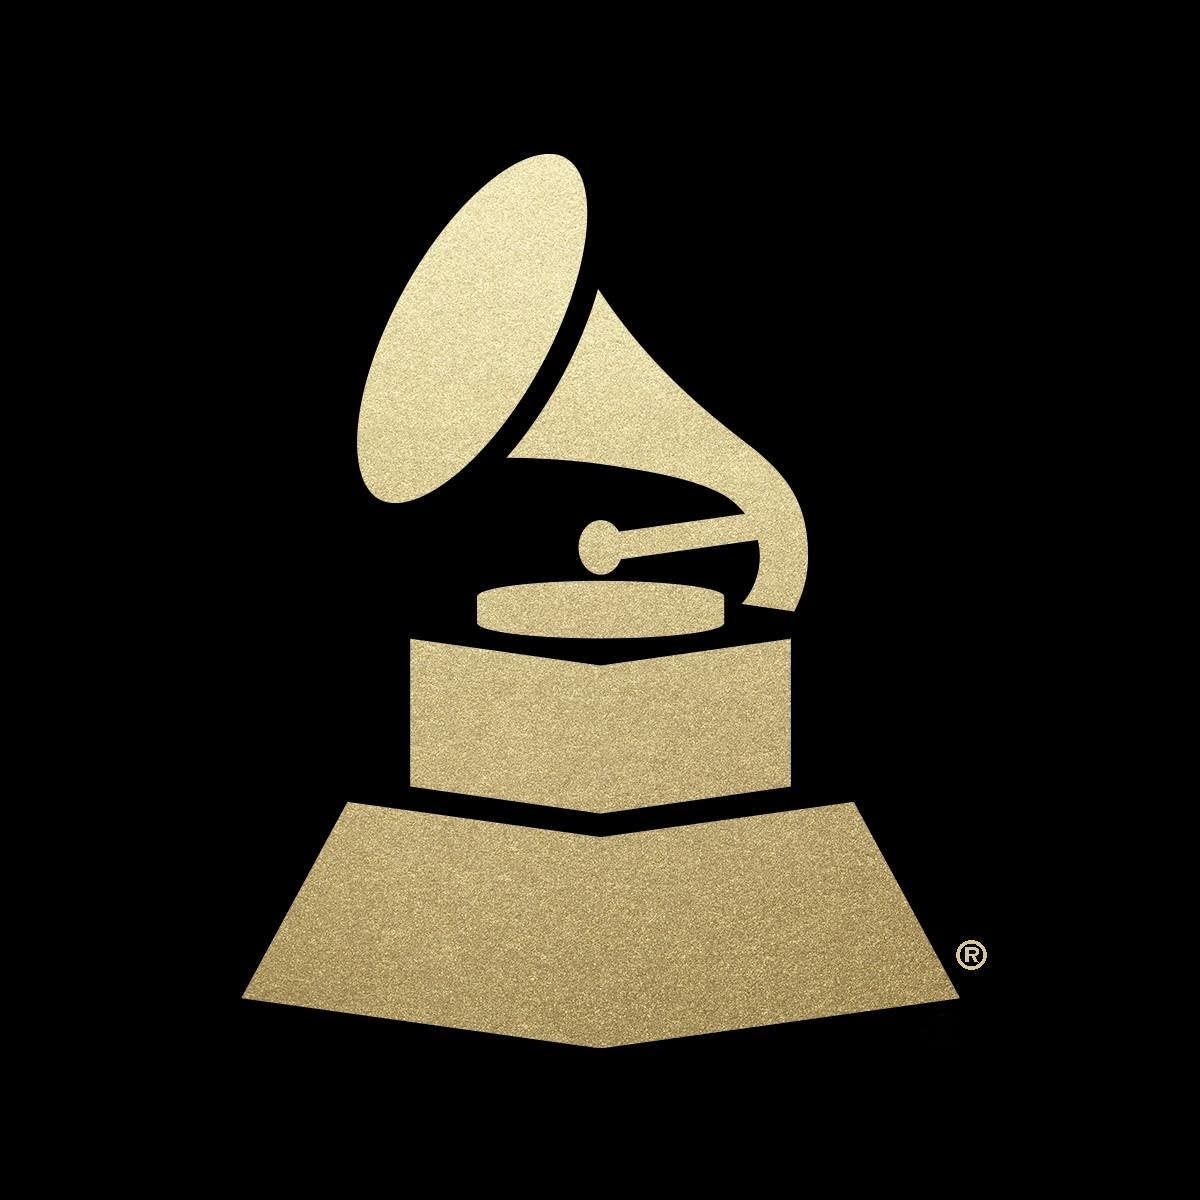 Grammys Logo - Coffee Break: Grammy nominees | The Current